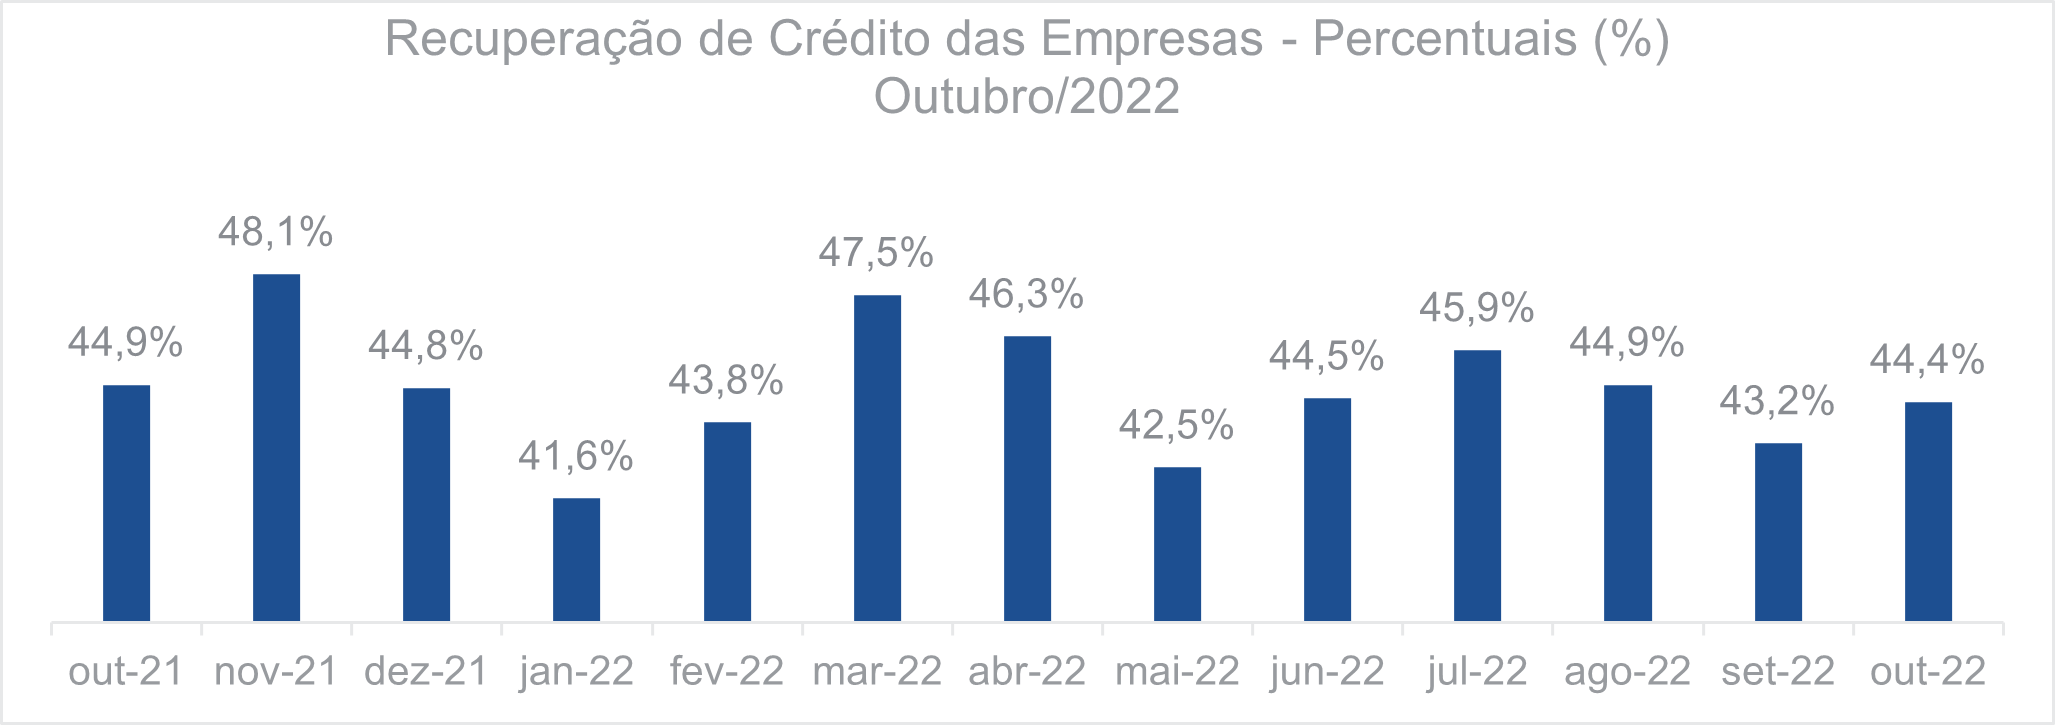 Recuperação de crédito das empresas Percentuais Outubro 2022